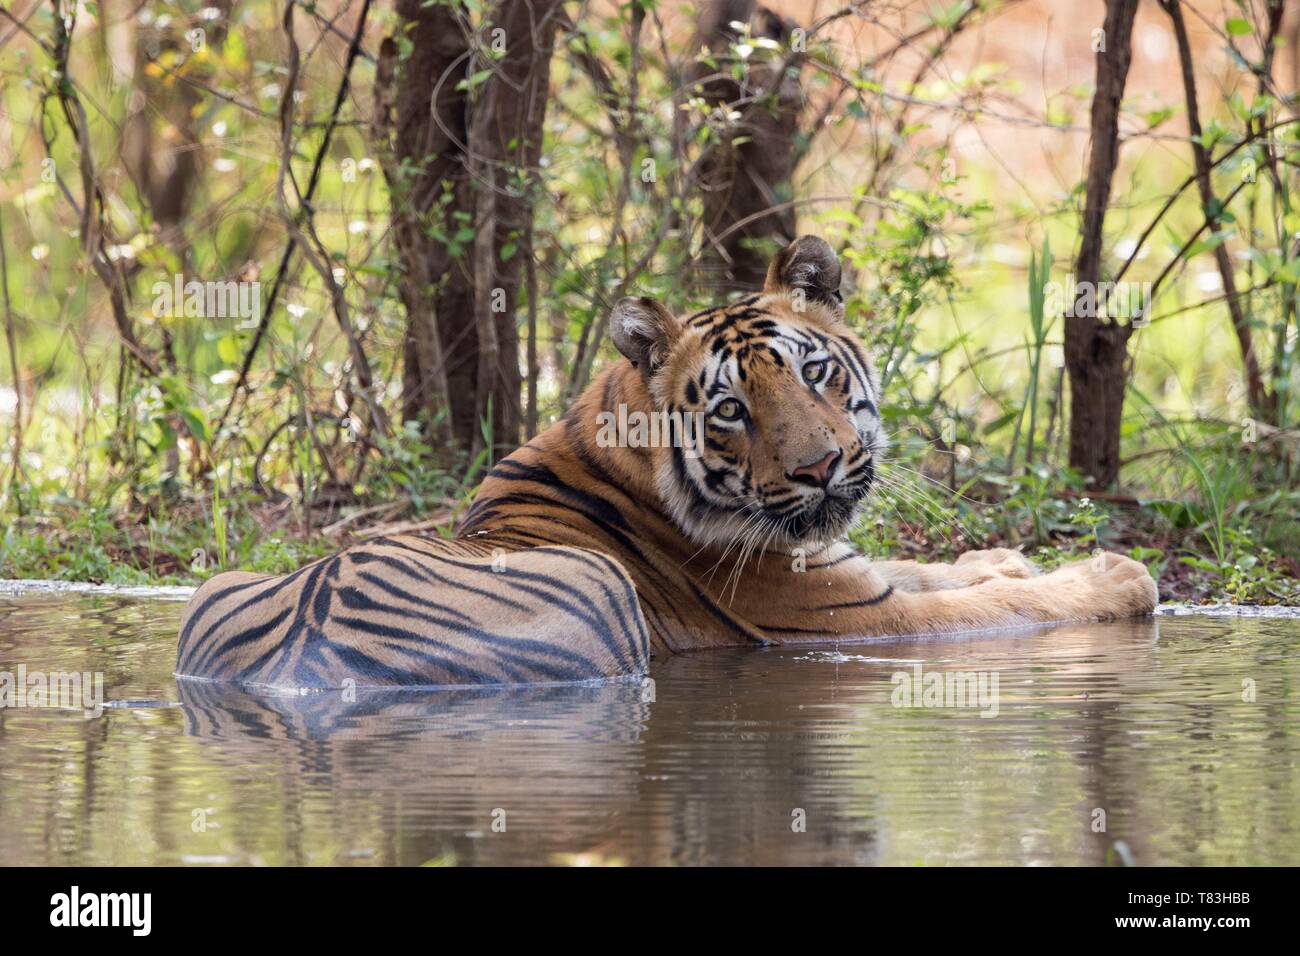 L'Inde, Maharashtra, Tadoba Andhari Tiger Reserve, parc national de Tadoba, tigre du Bengale (Panthera tigris tigris), est actualisée automatiquement dans un trou d'eau artificiel créé par les gardes de la réserve Banque D'Images